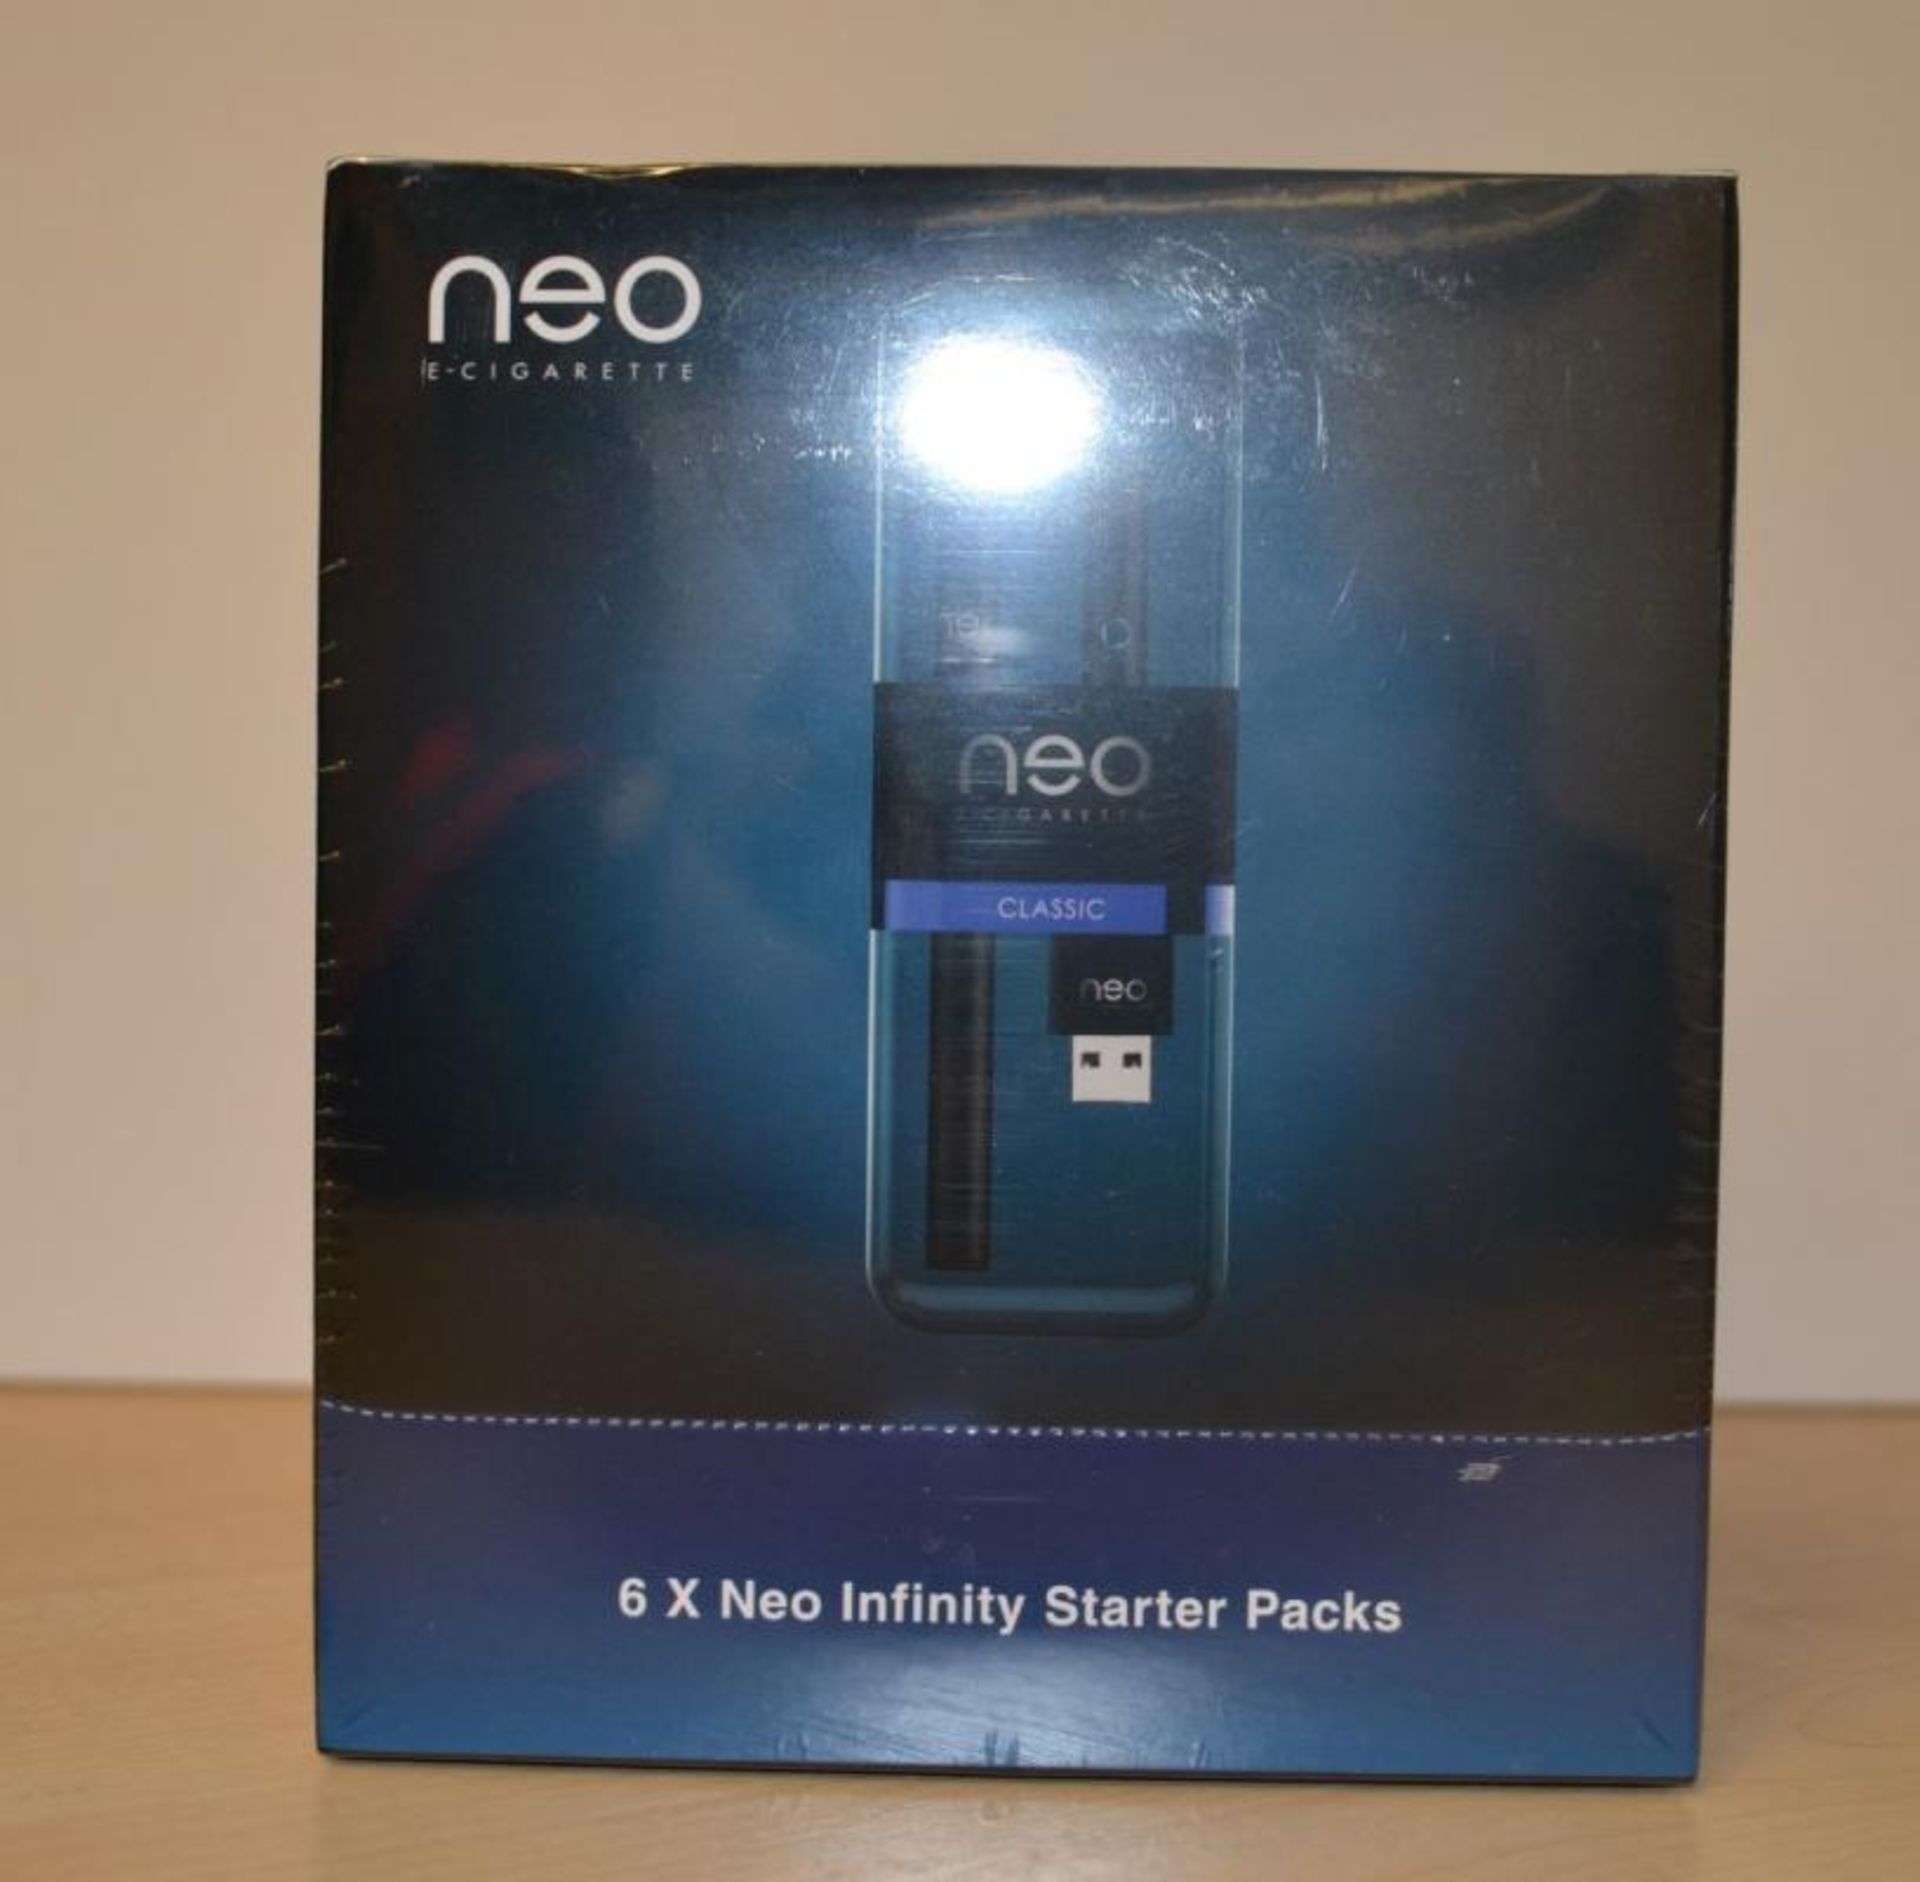 6 x Neo E-Cigarettes Infinity Starter Packs - New & Sealed Stock - CL185 - Ref: DRTISP - Location: S